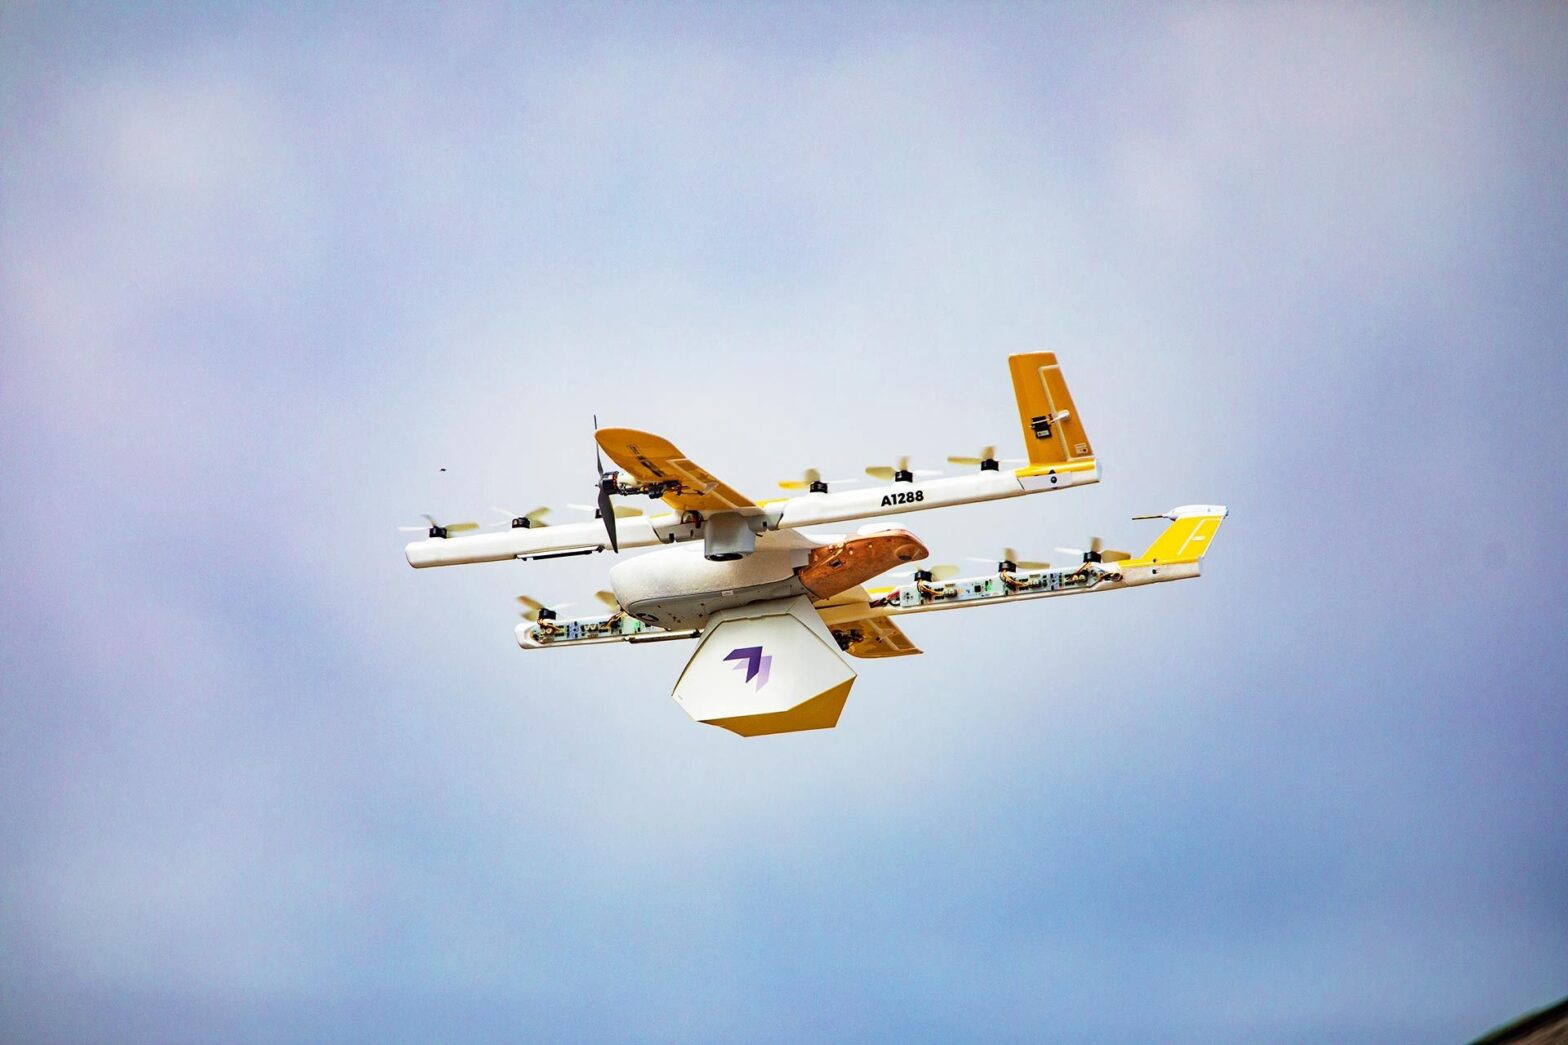 la livraison de colis par drone volant dans plus de pays d'Europe